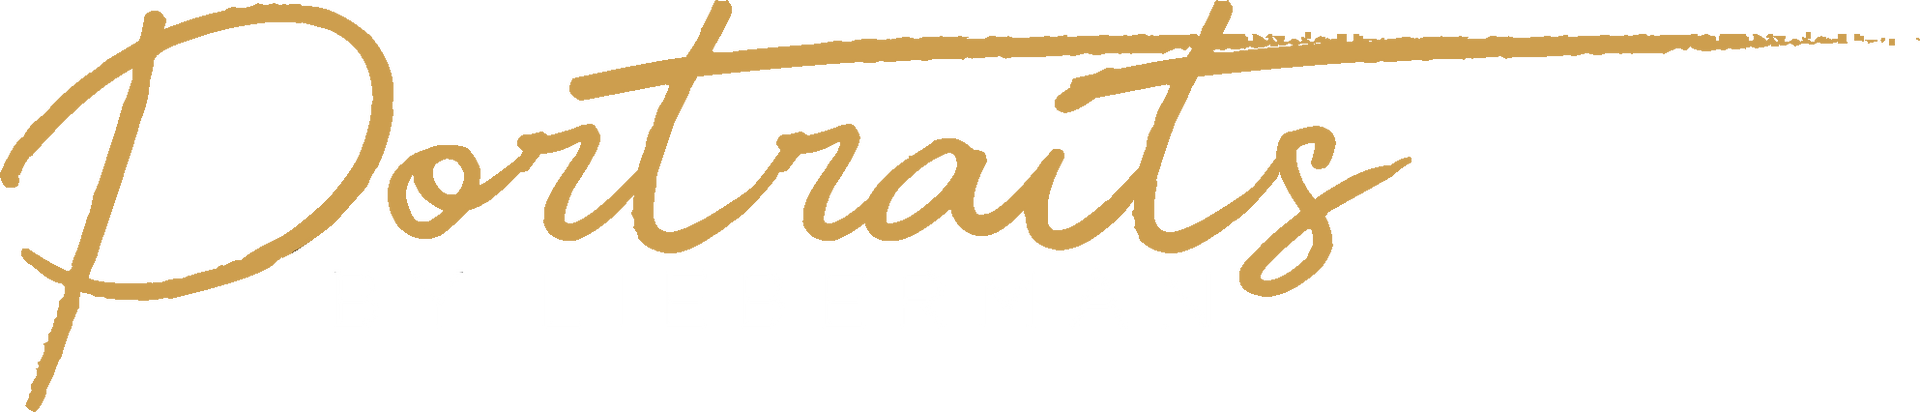 Portraits By Lieberman logo